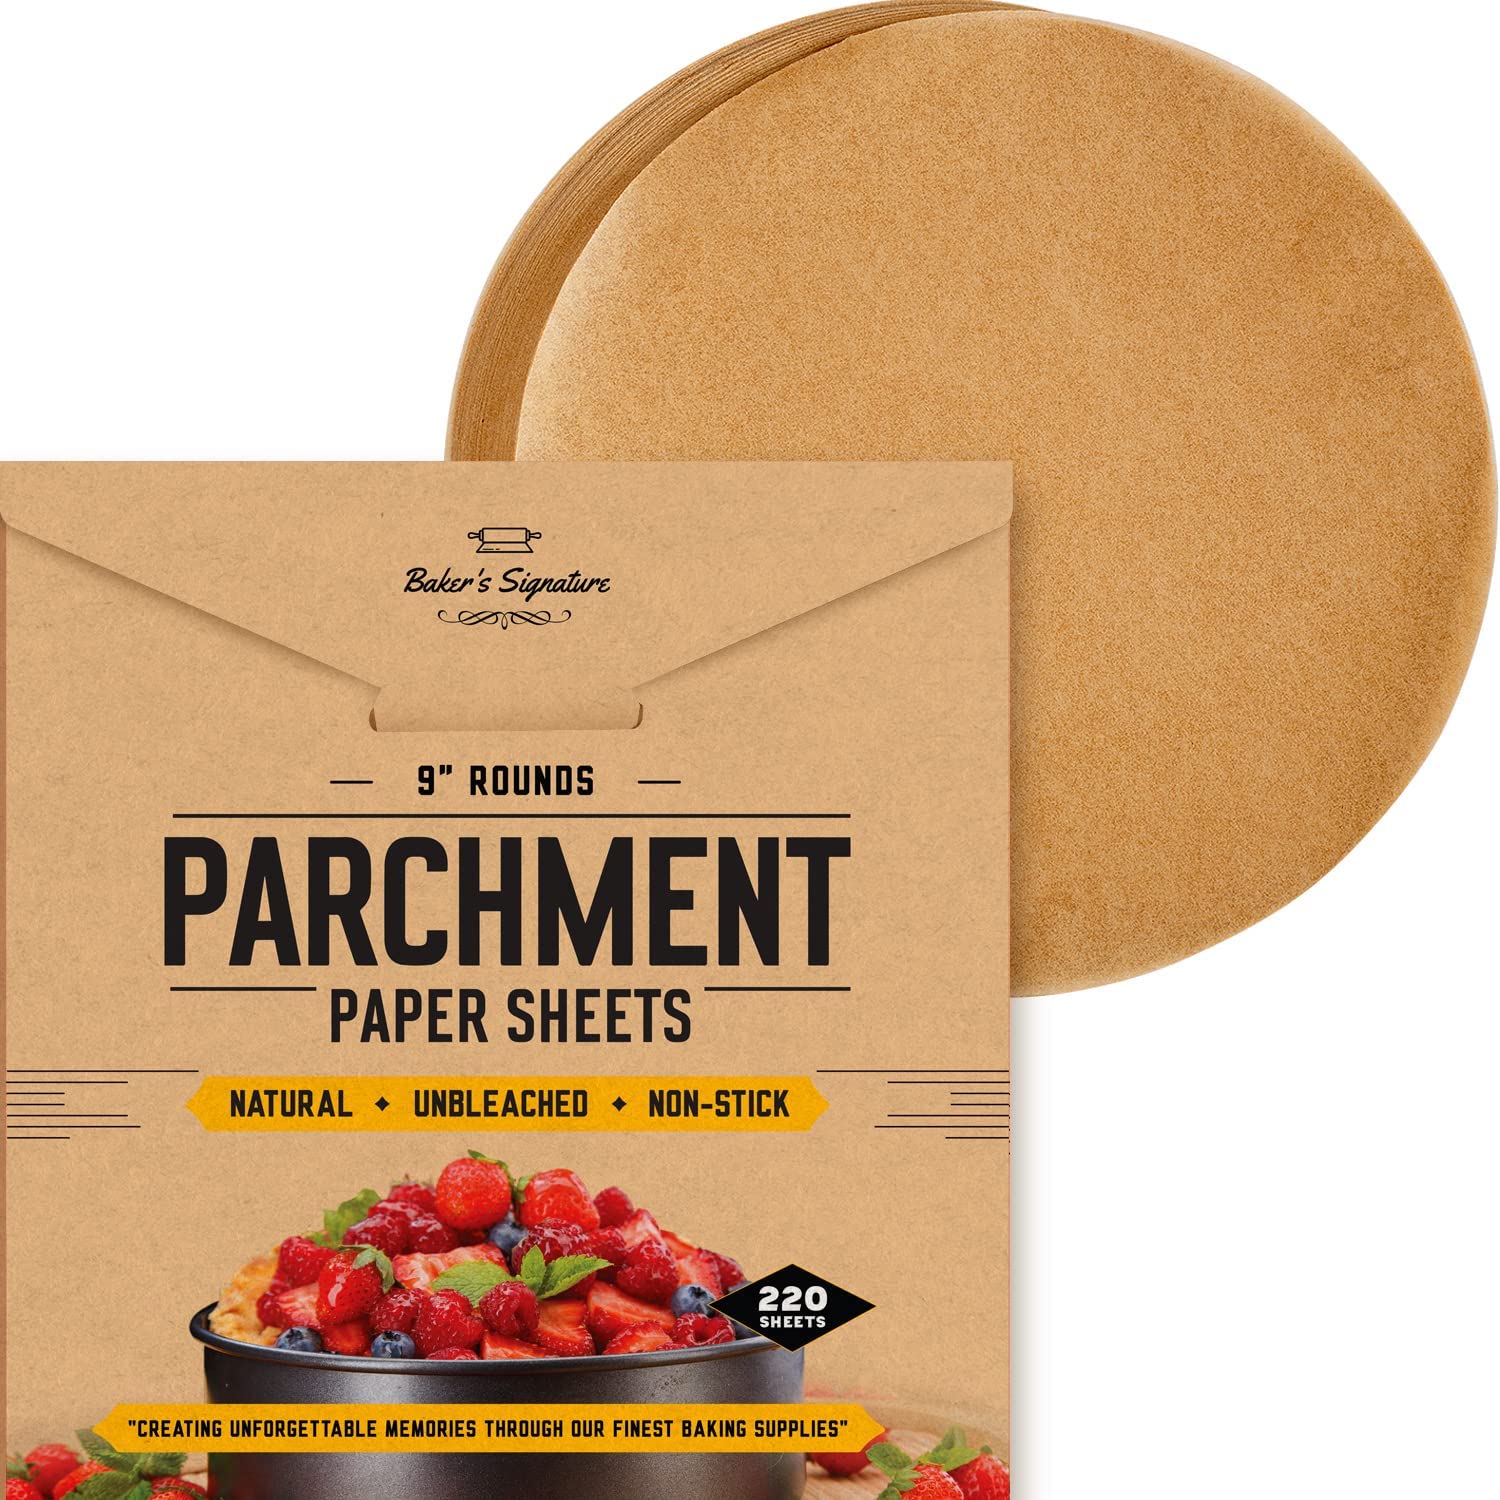 Parchment Paper Sheets, Pre-cut Unbleached Parchment Baking Paper